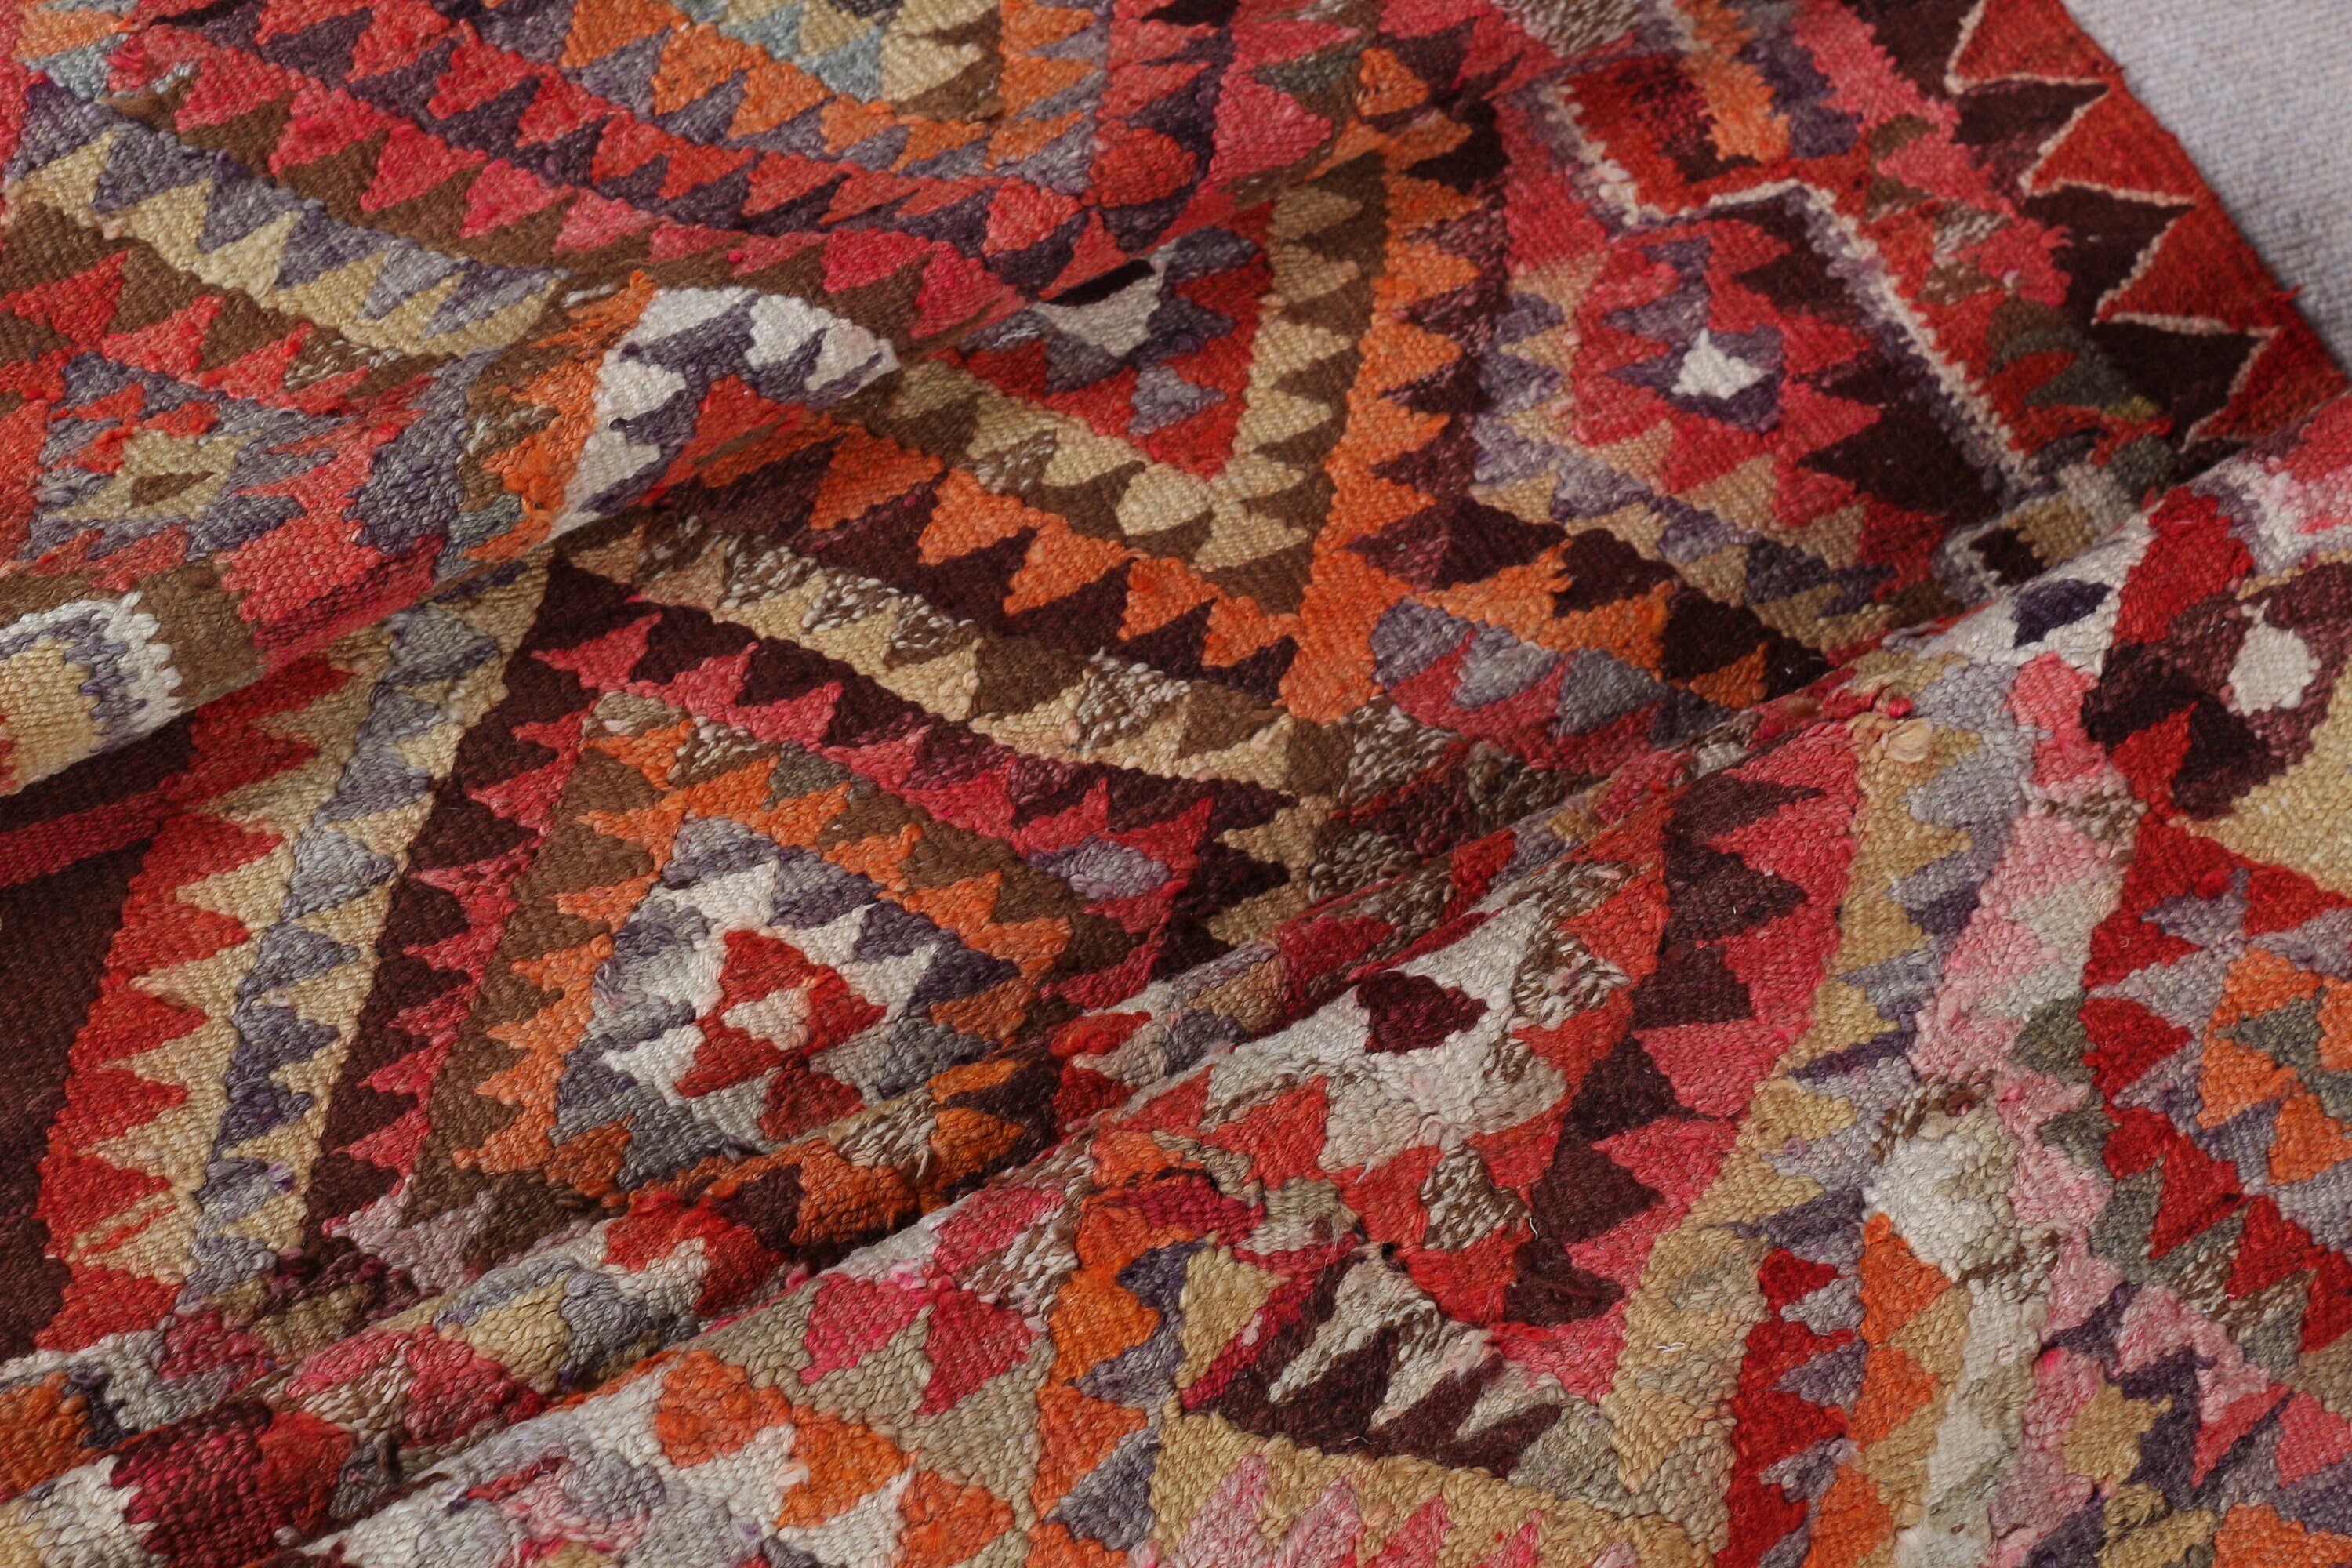 Kilim, Turkish Rug, Kitchen Rug, Vintage Rug, 3x10.3 ft Runner Rugs, Oriental Rug, Art Rug, Moroccan Rug, Pink Floor Rugs, Stair Rugs